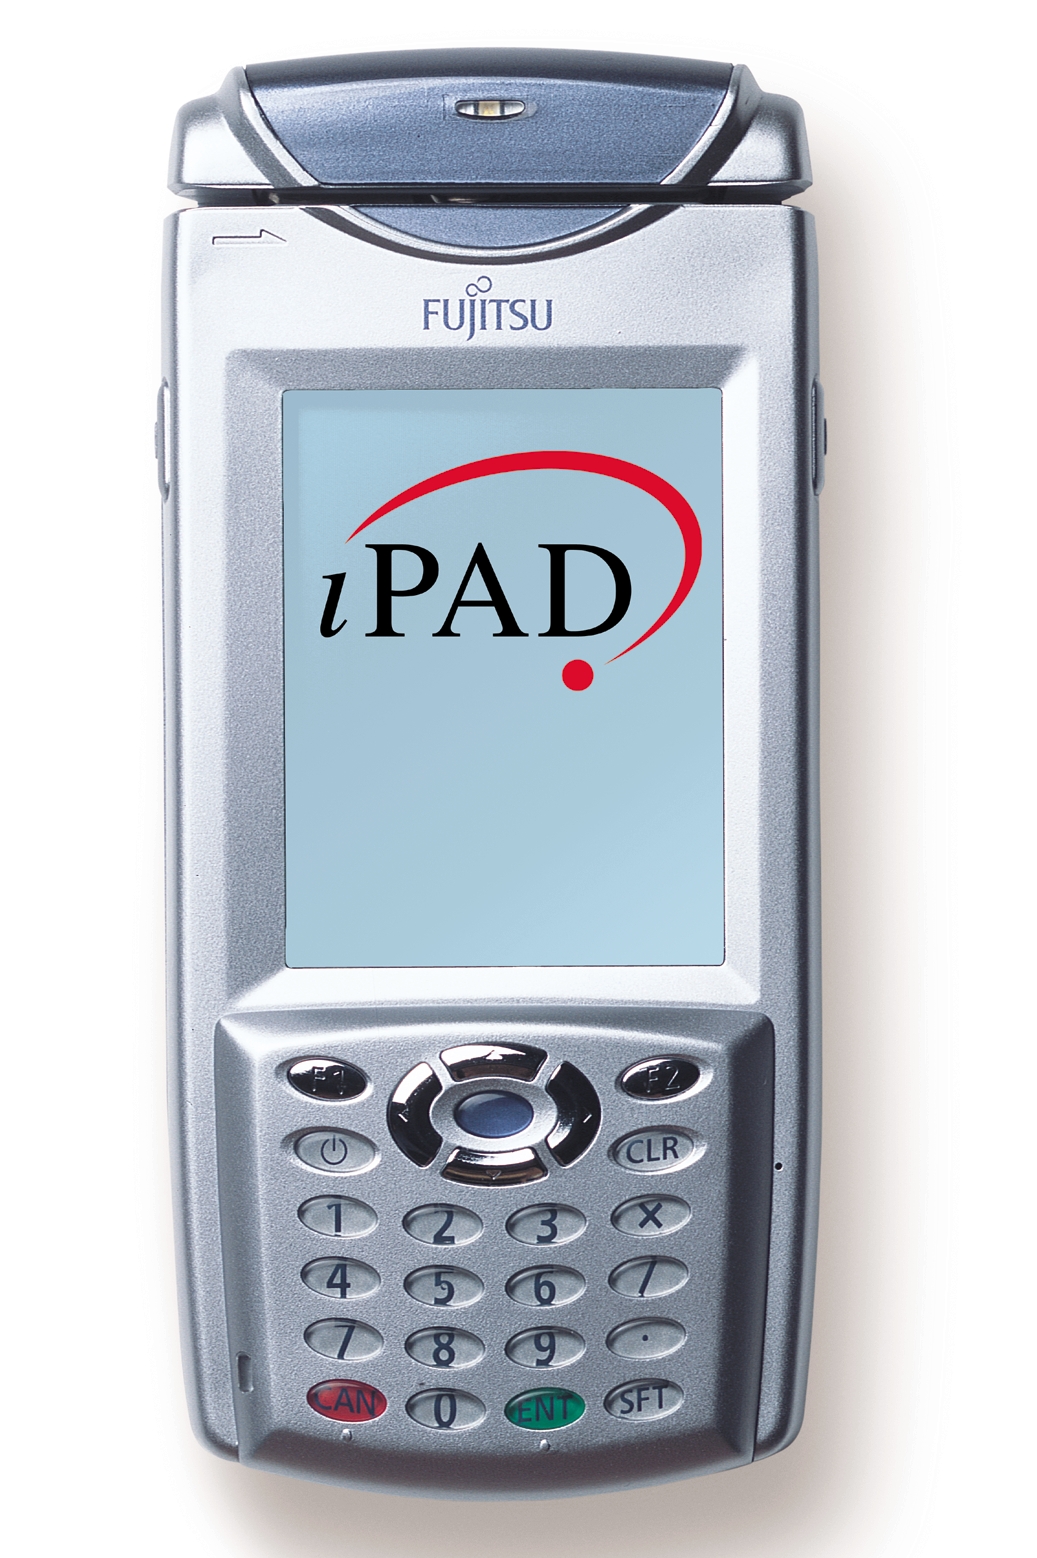 Das iPAD von Fujitsu.